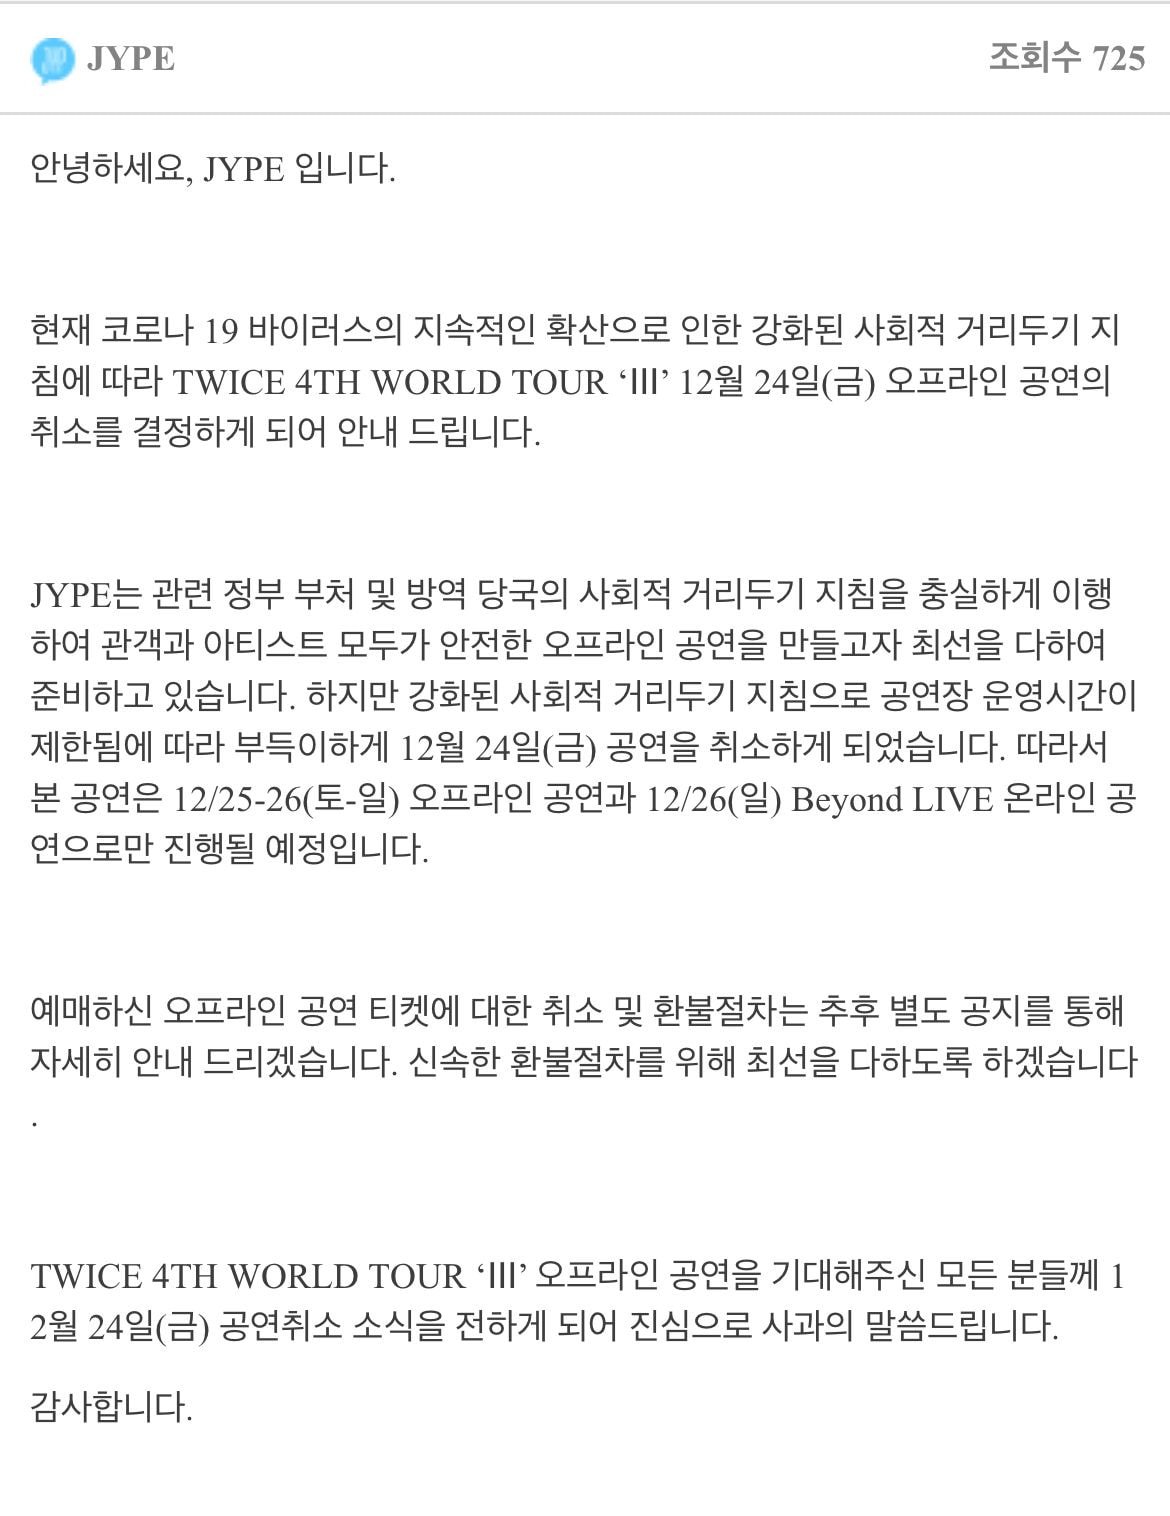 theqoo: TWICE hủy concert ngày 24/12 tại Hàn Quốc